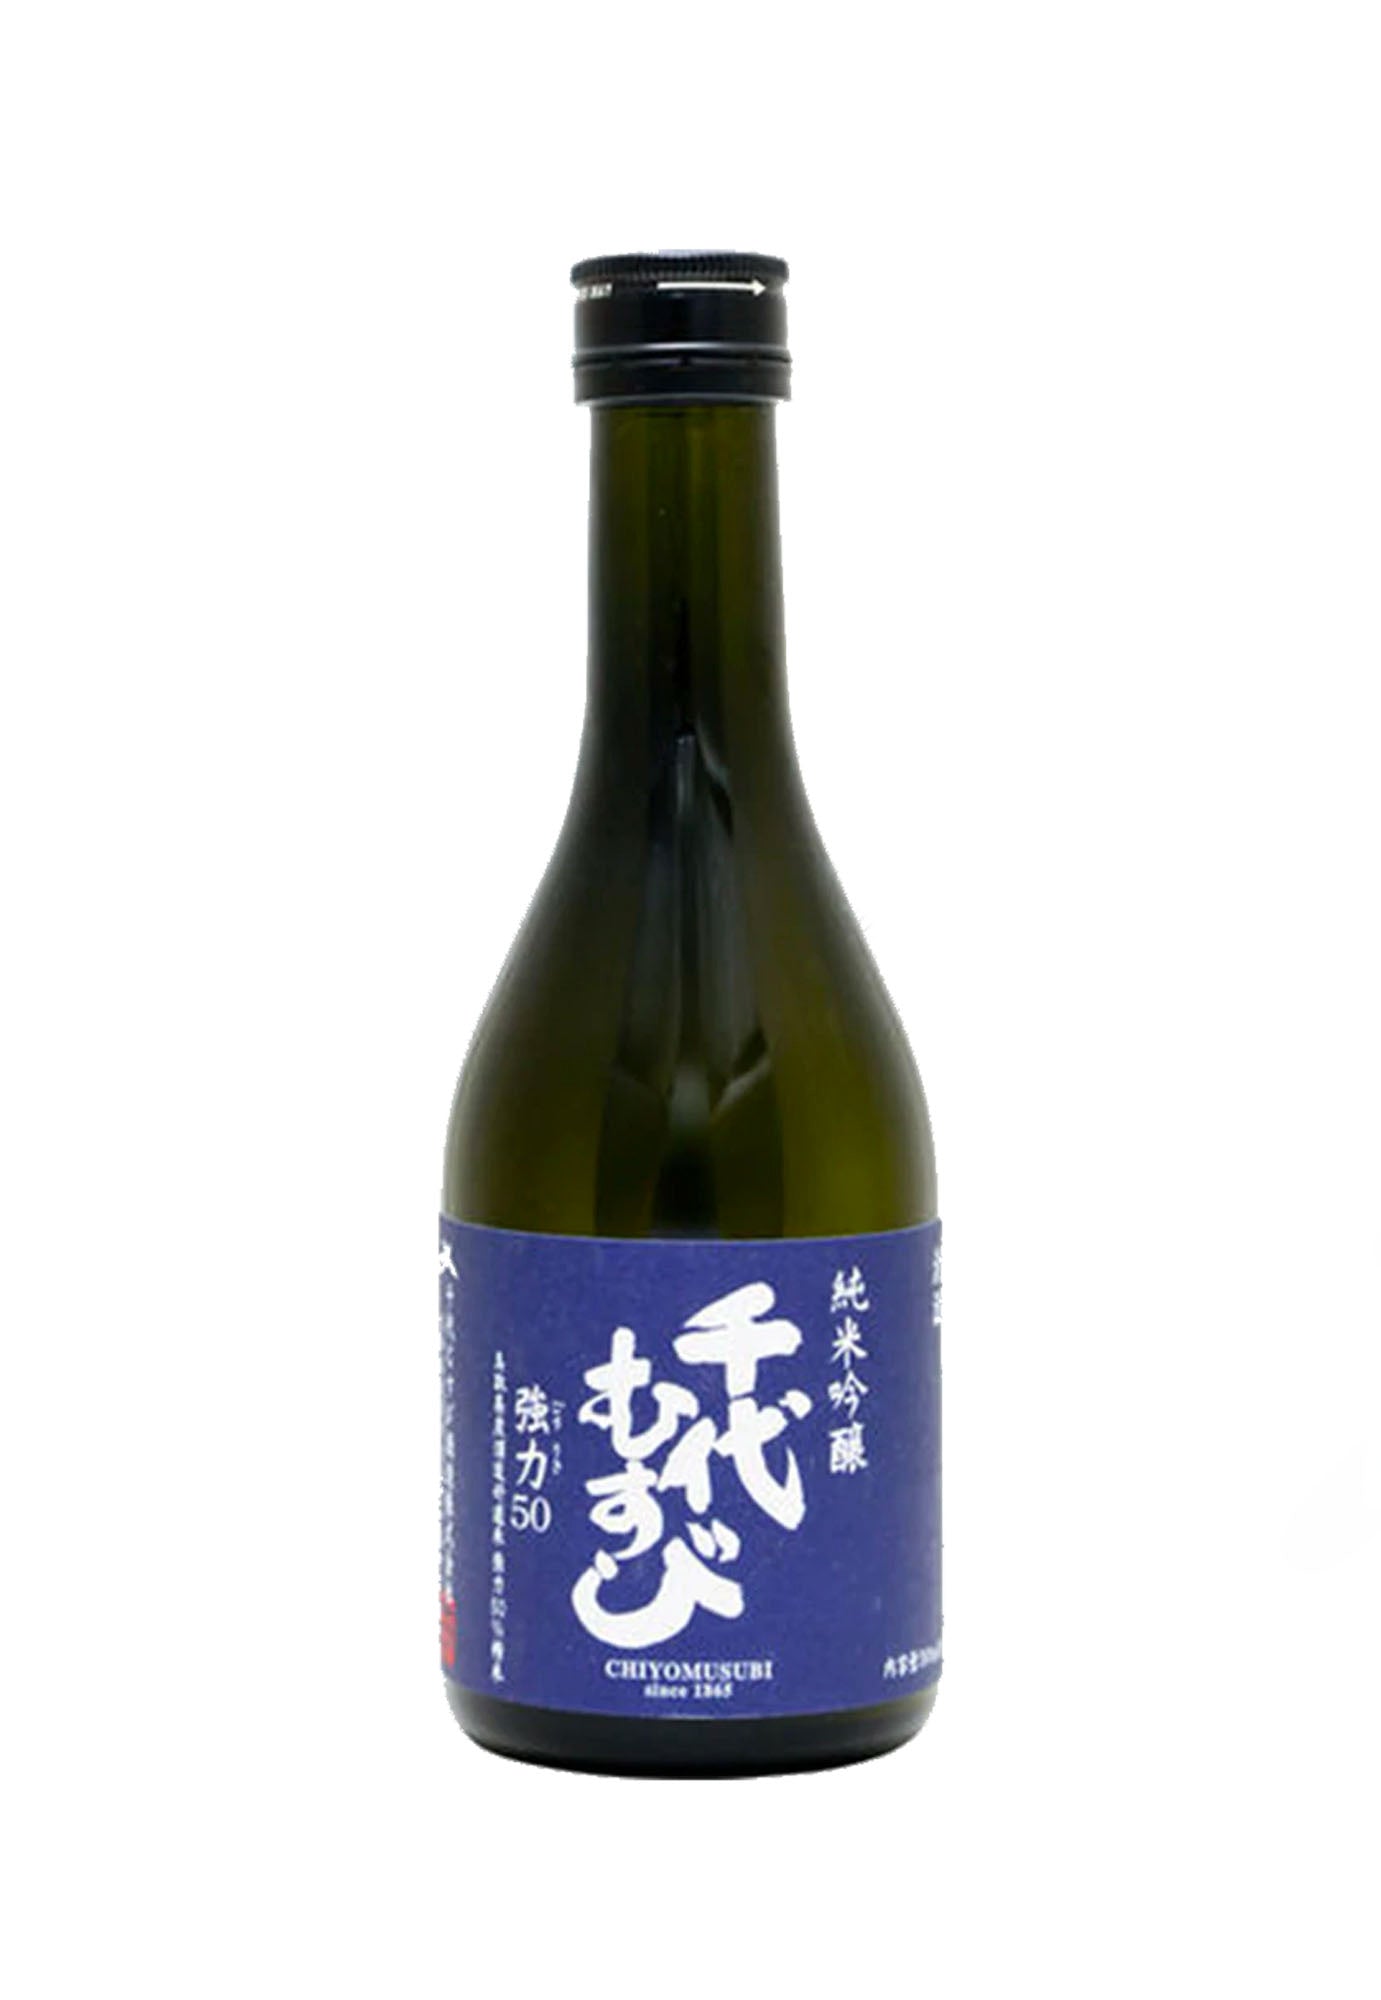 Chiyomusubi Shuzo Goriki 50 Junmai Ginjo Sake - 300 ml